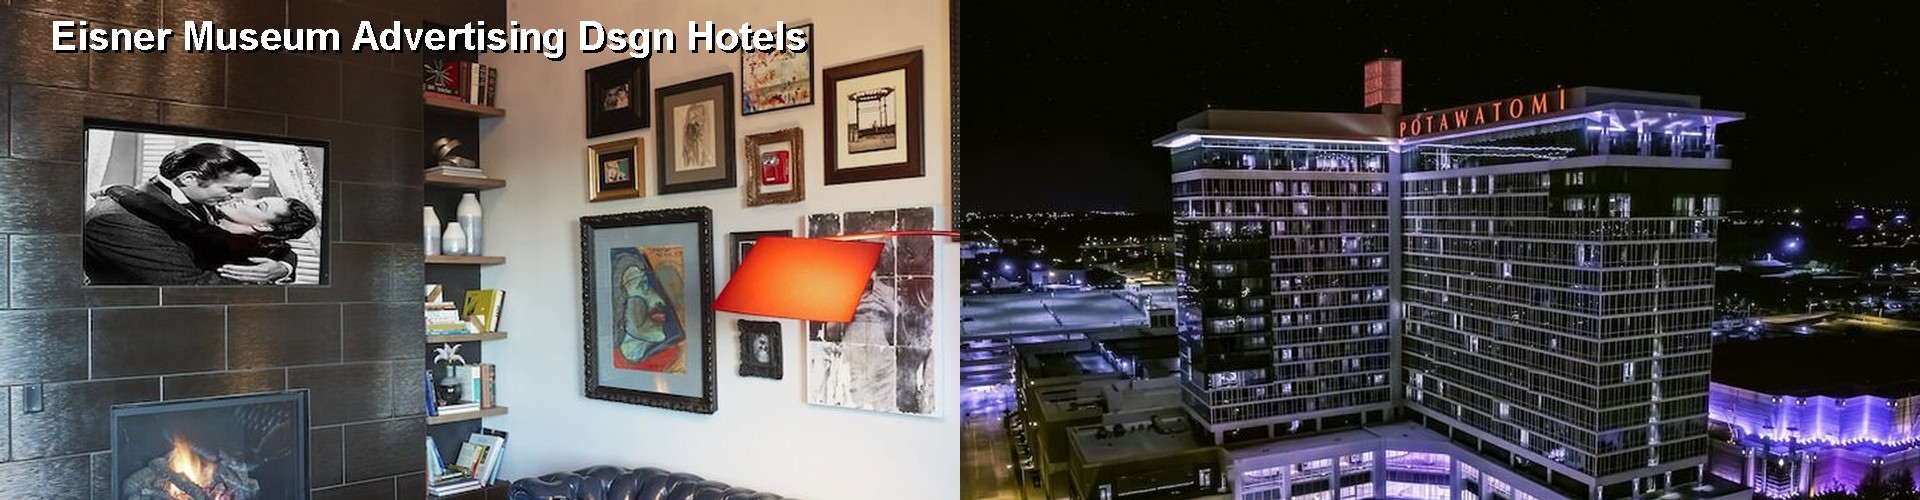 5 Best Hotels near Eisner Museum Advertising Dsgn